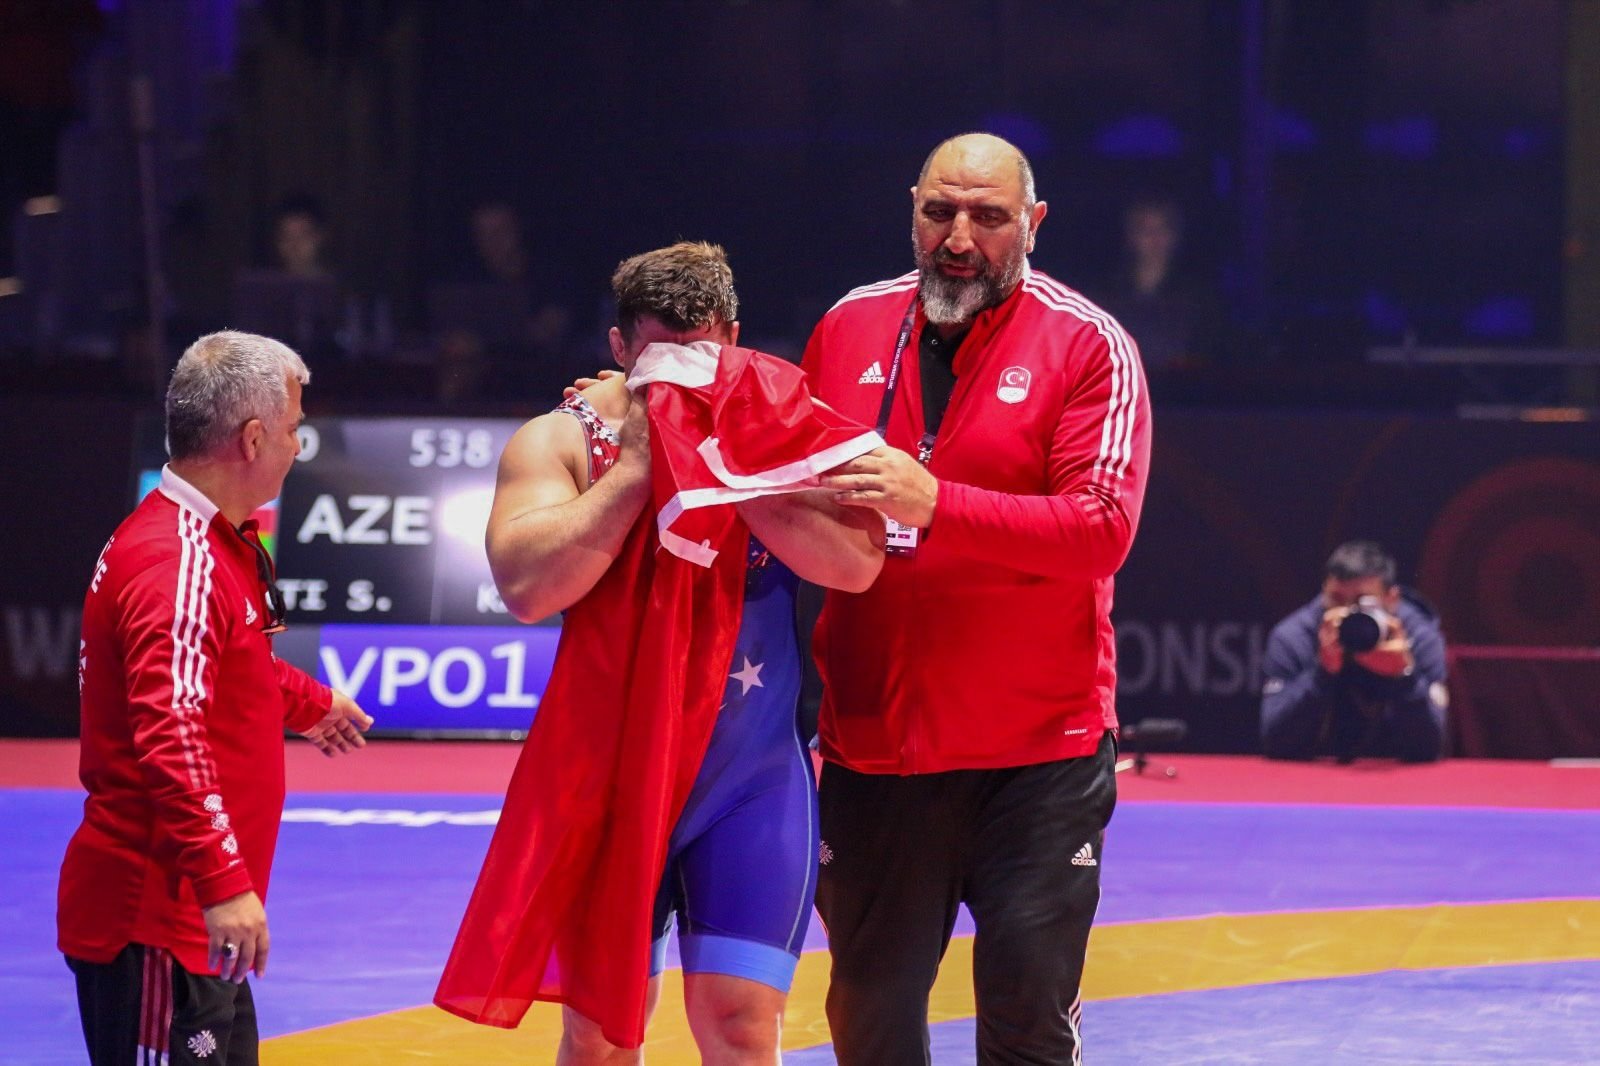 Rıza Kayaalp secures historic 12th European gold to equal record of  wrestling legend Aleksandr Karelin – T-VINE